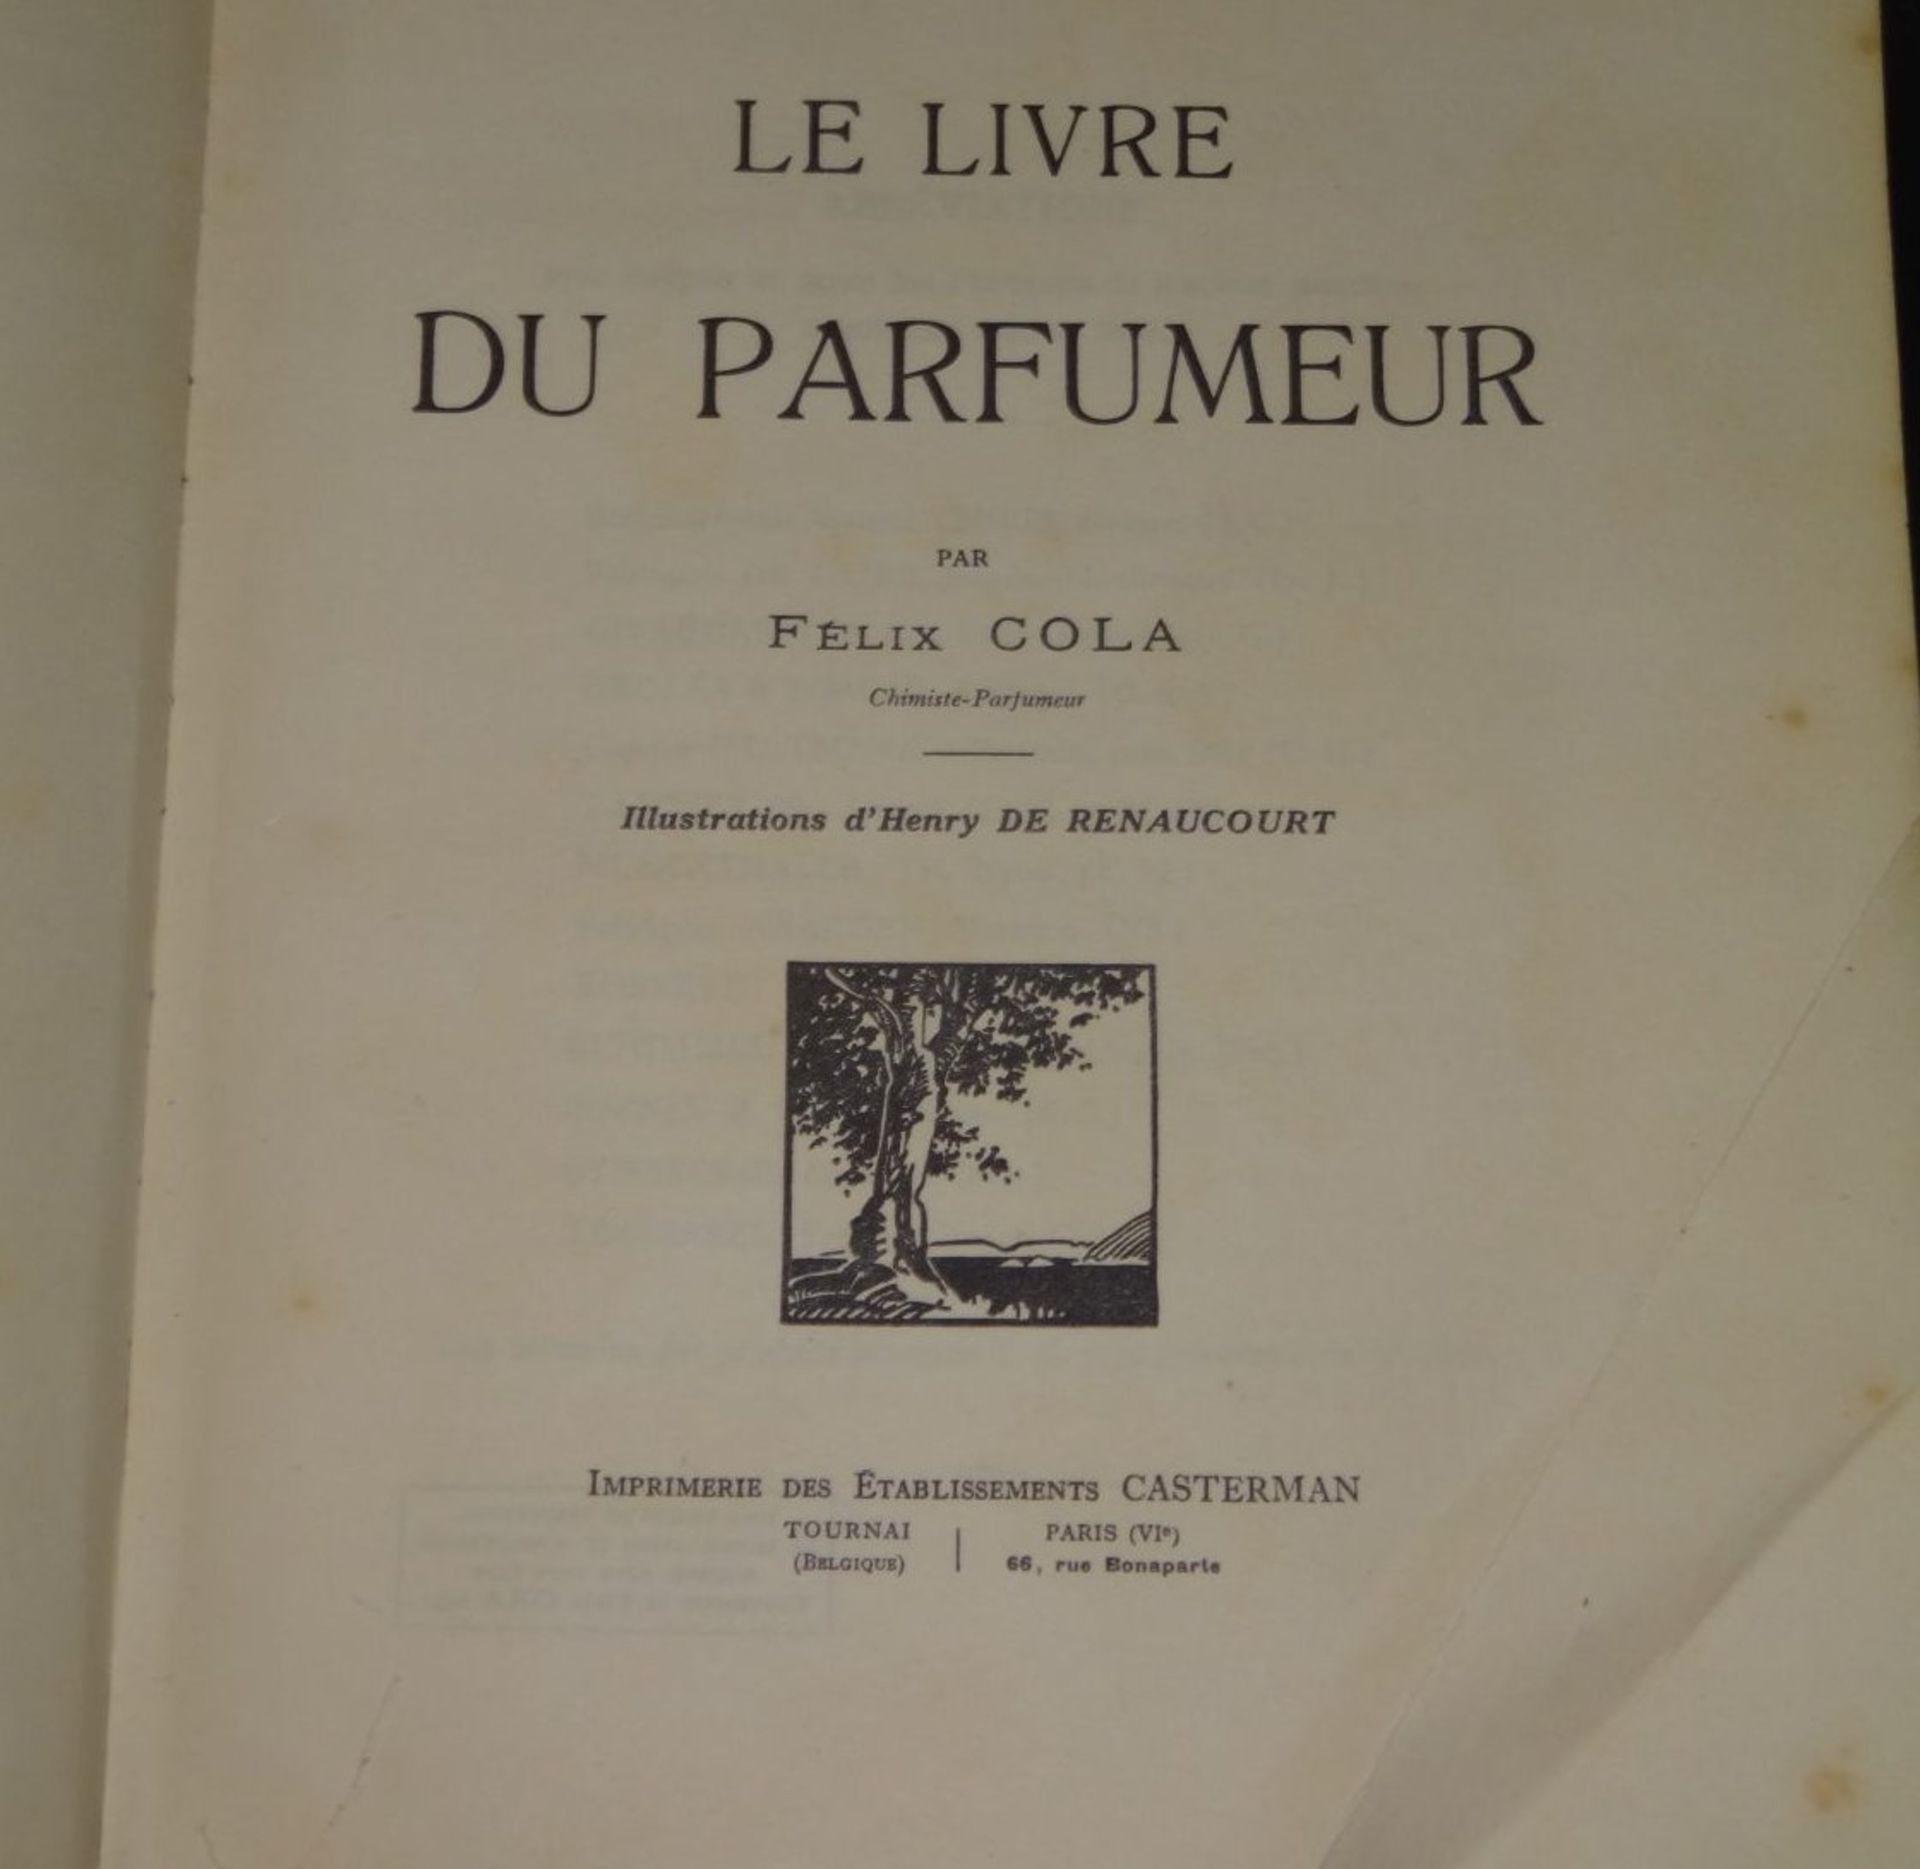 Felix Cola "Le livre de parfumeur" 1931, Selbstverlag, Alters-u. Gebrauchsspuren (Das Buch des - Bild 2 aus 7